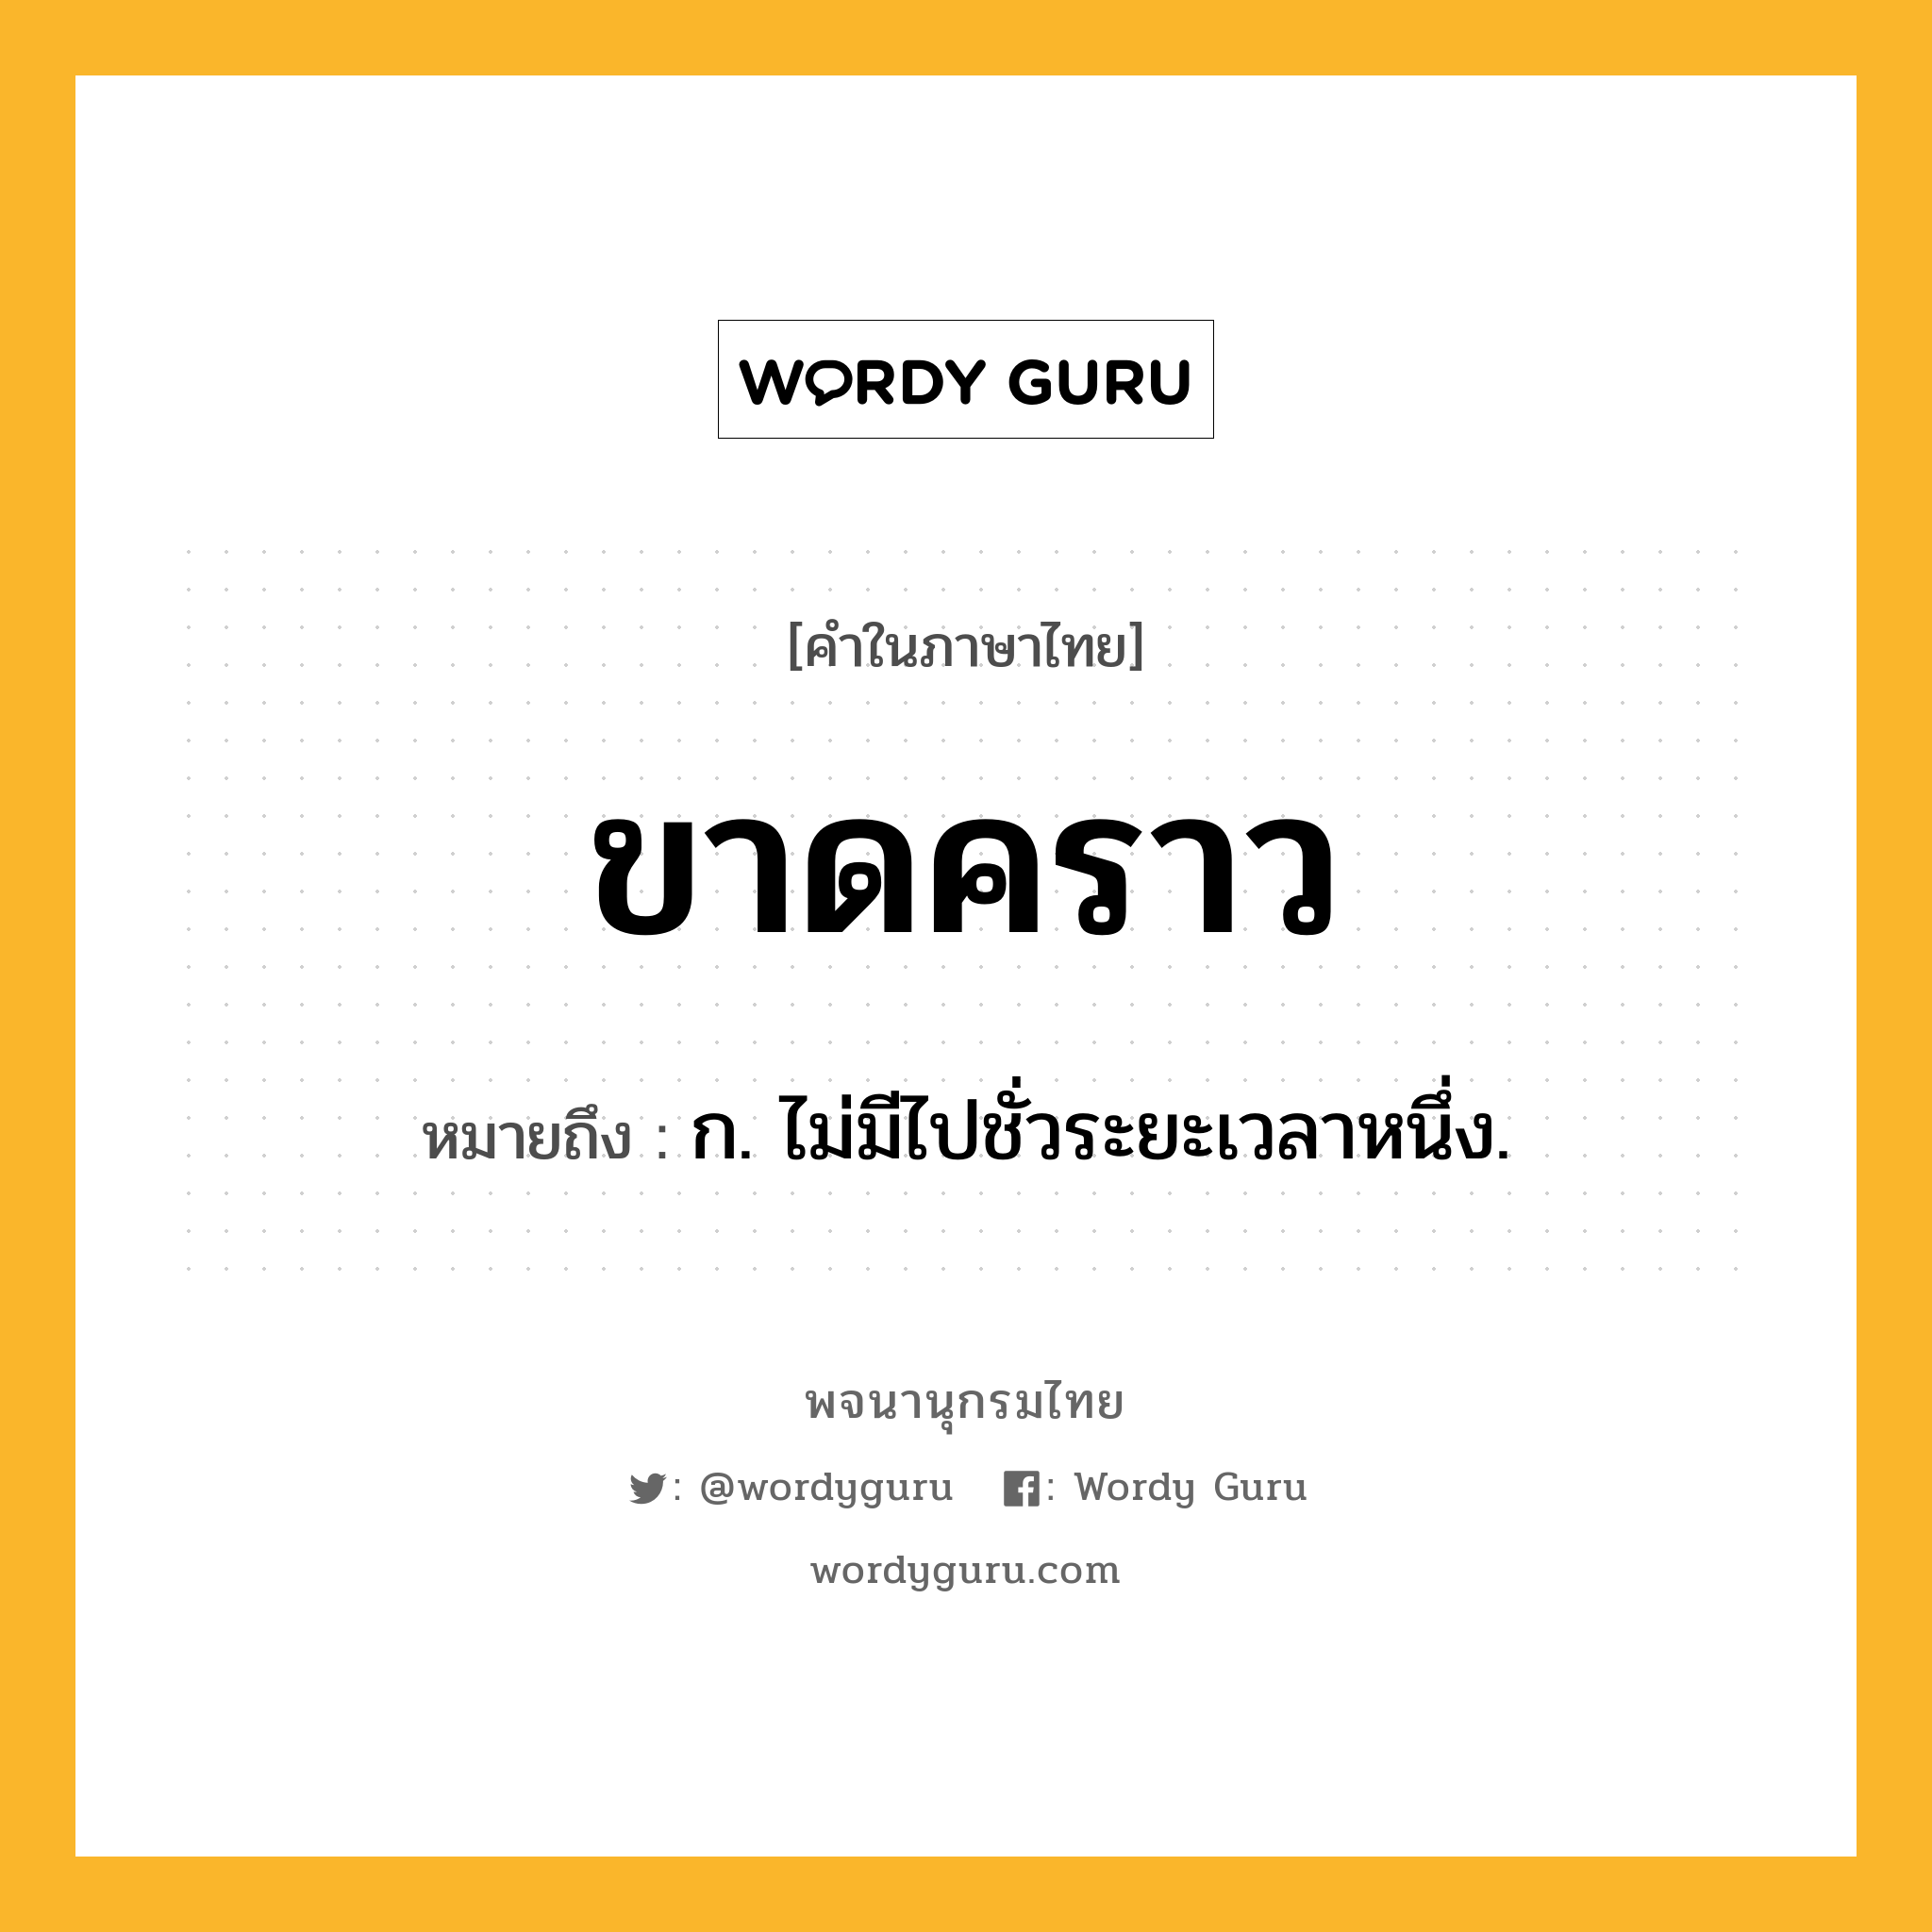 ขาดคราว หมายถึงอะไร?, คำในภาษาไทย ขาดคราว หมายถึง ก. ไม่มีไปชั่วระยะเวลาหนึ่ง.